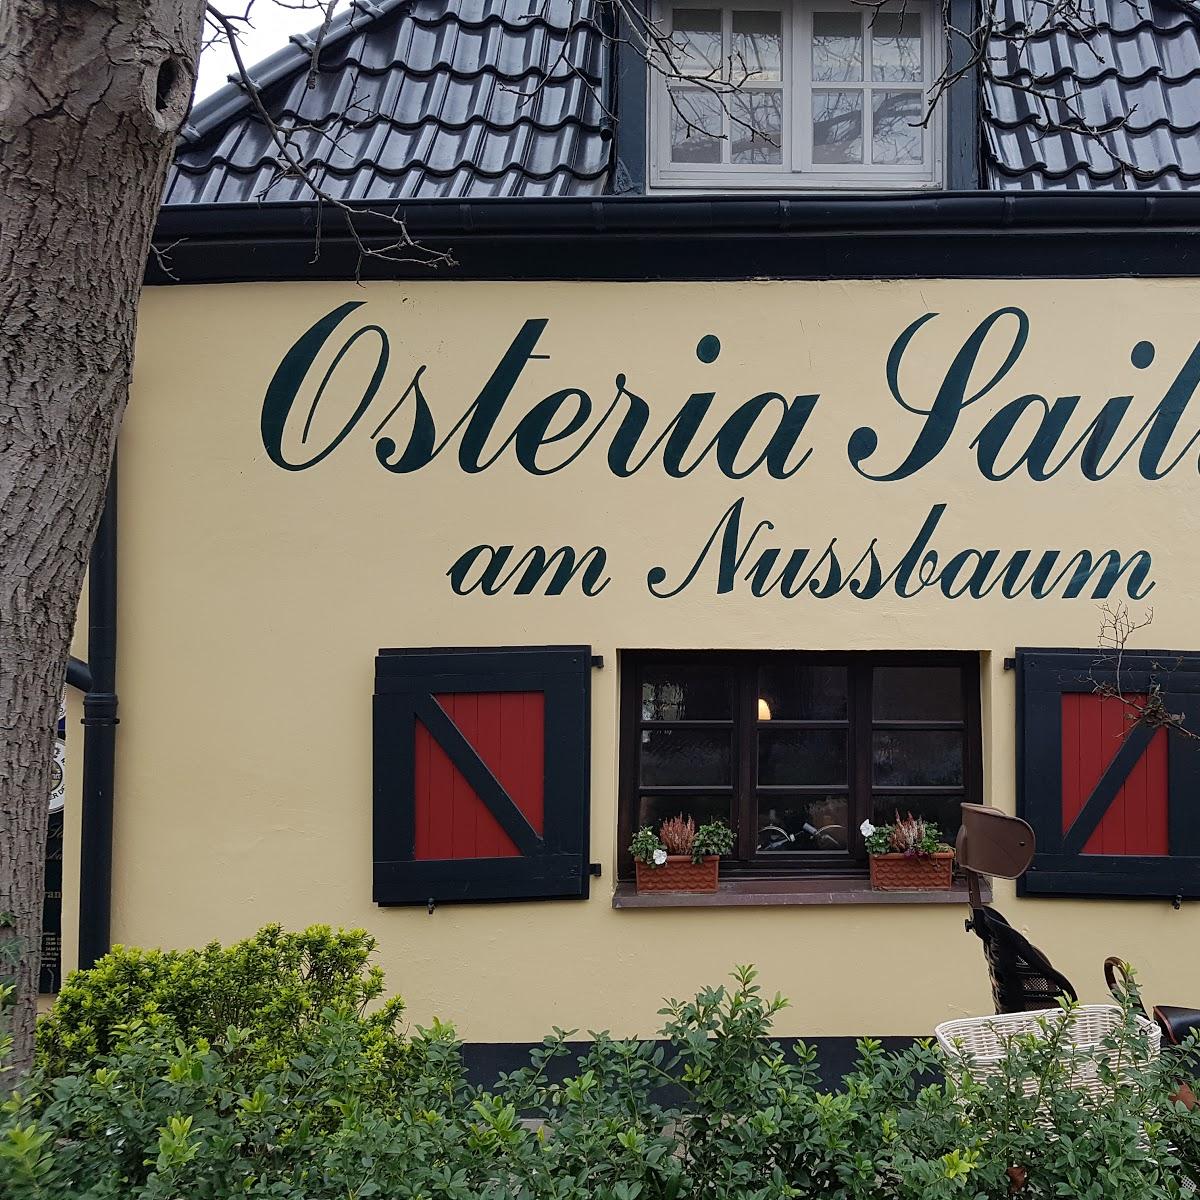 Restaurant "Osteria Saitta GmbH" in Düsseldorf